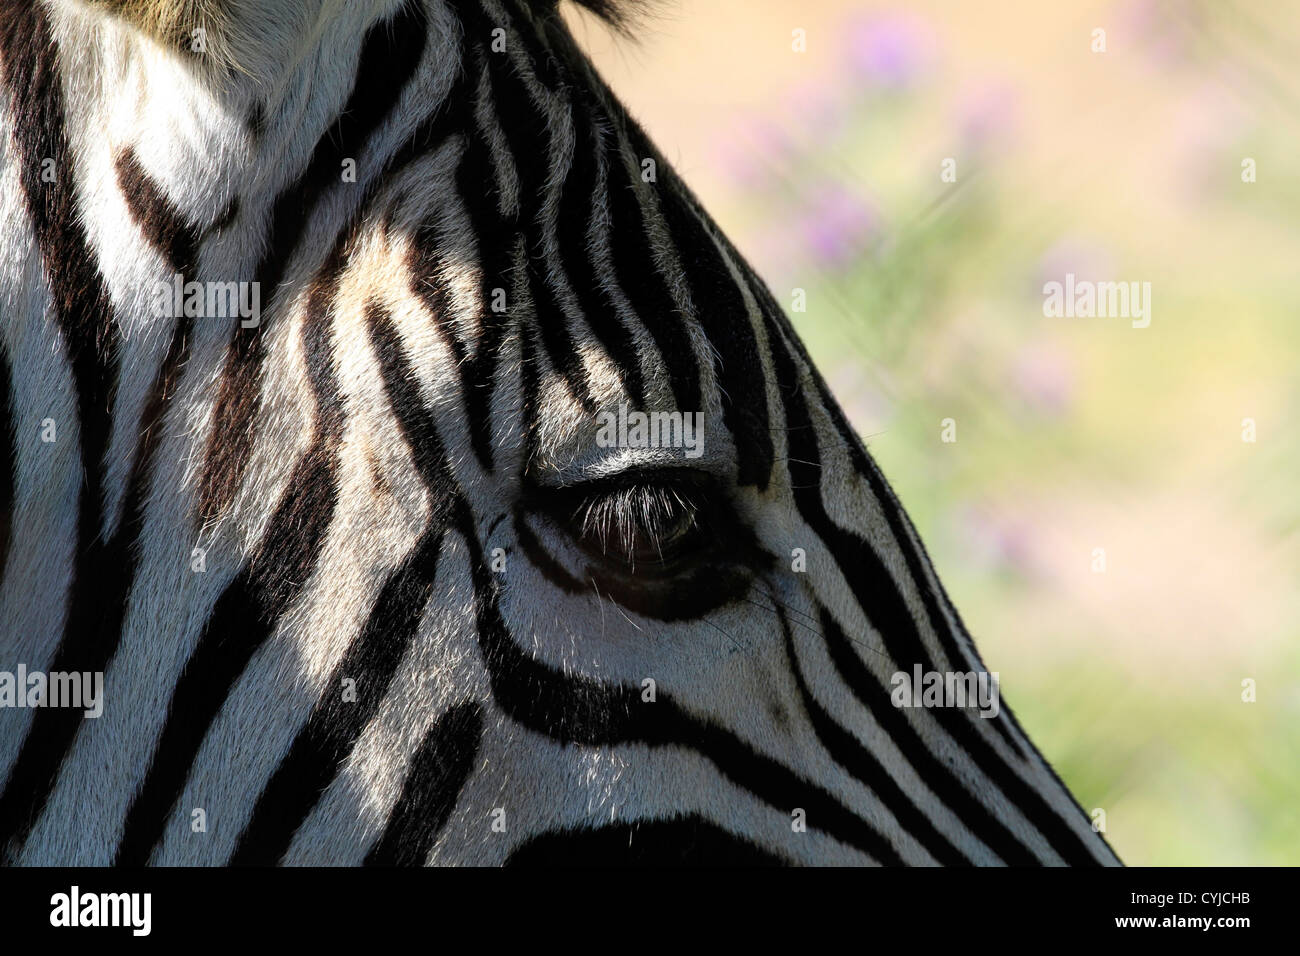 Close up of a Zebra's eye showing long eyelashes . Stock Photo